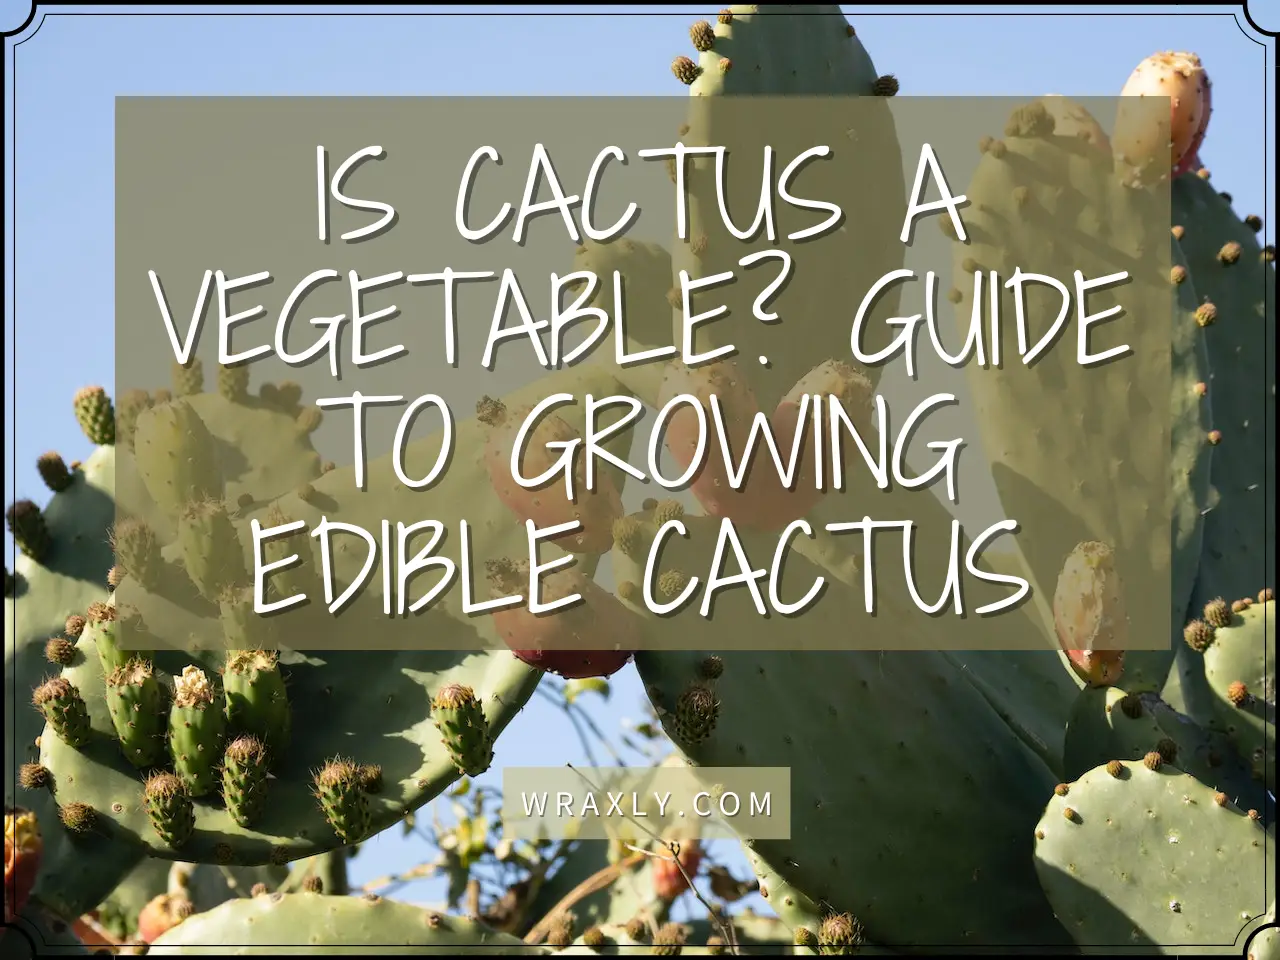 Le cactus est-il un guide végétal pour cultiver des cactus comestibles